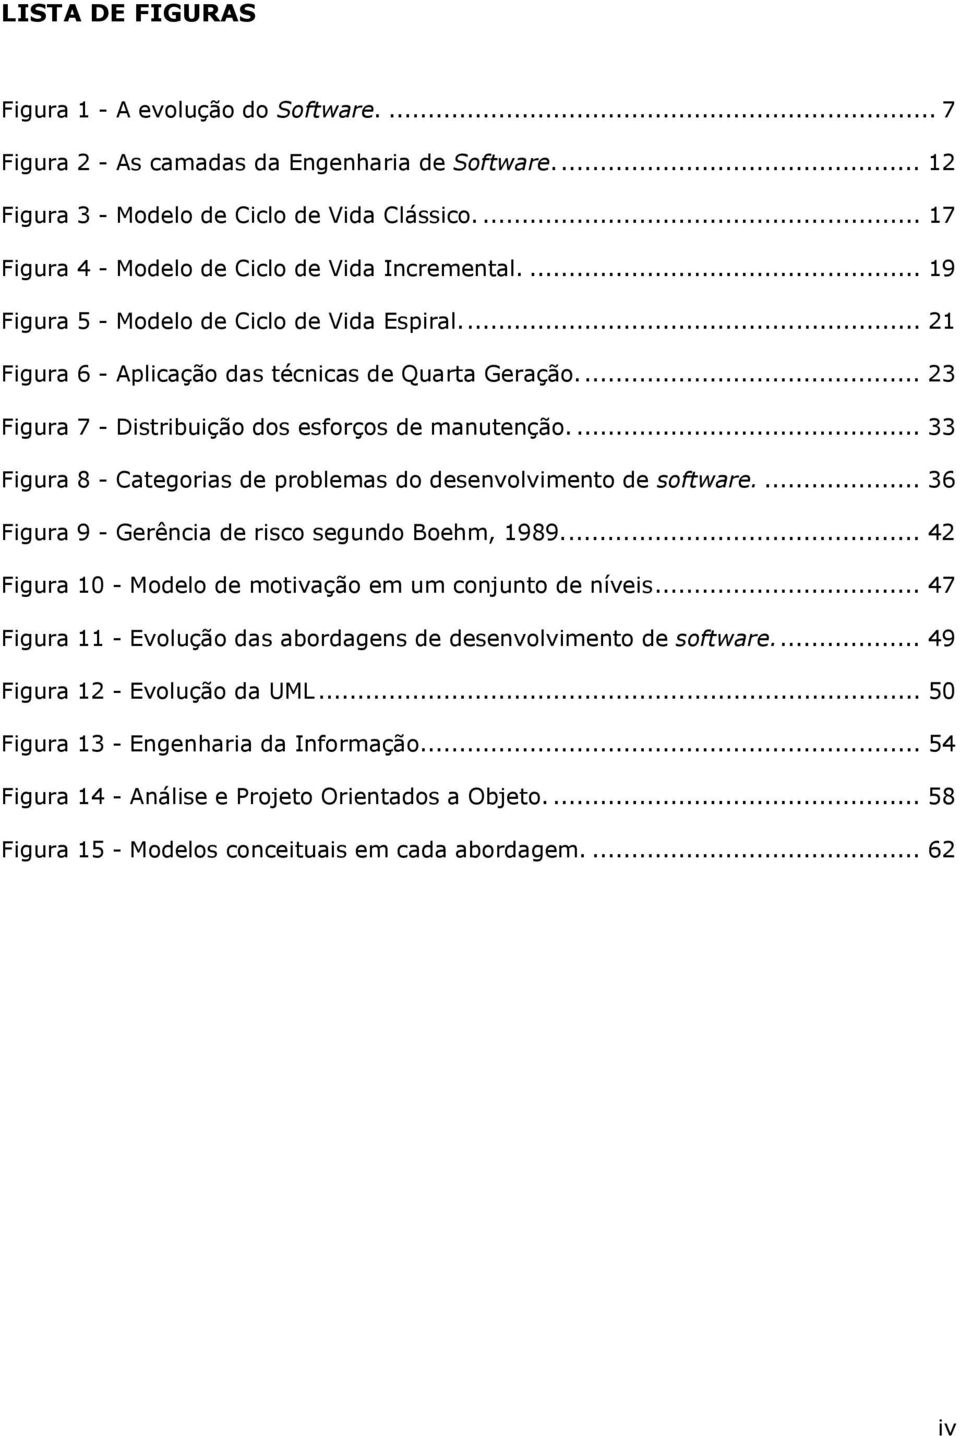 .. 23 Figura 7 - Distribuição dos esforços de manutenção.... 33 Figura 8 - Categorias de problemas do desenvolvimento de software.... 36 Figura 9 - Gerência de risco segundo Boehm, 1989.